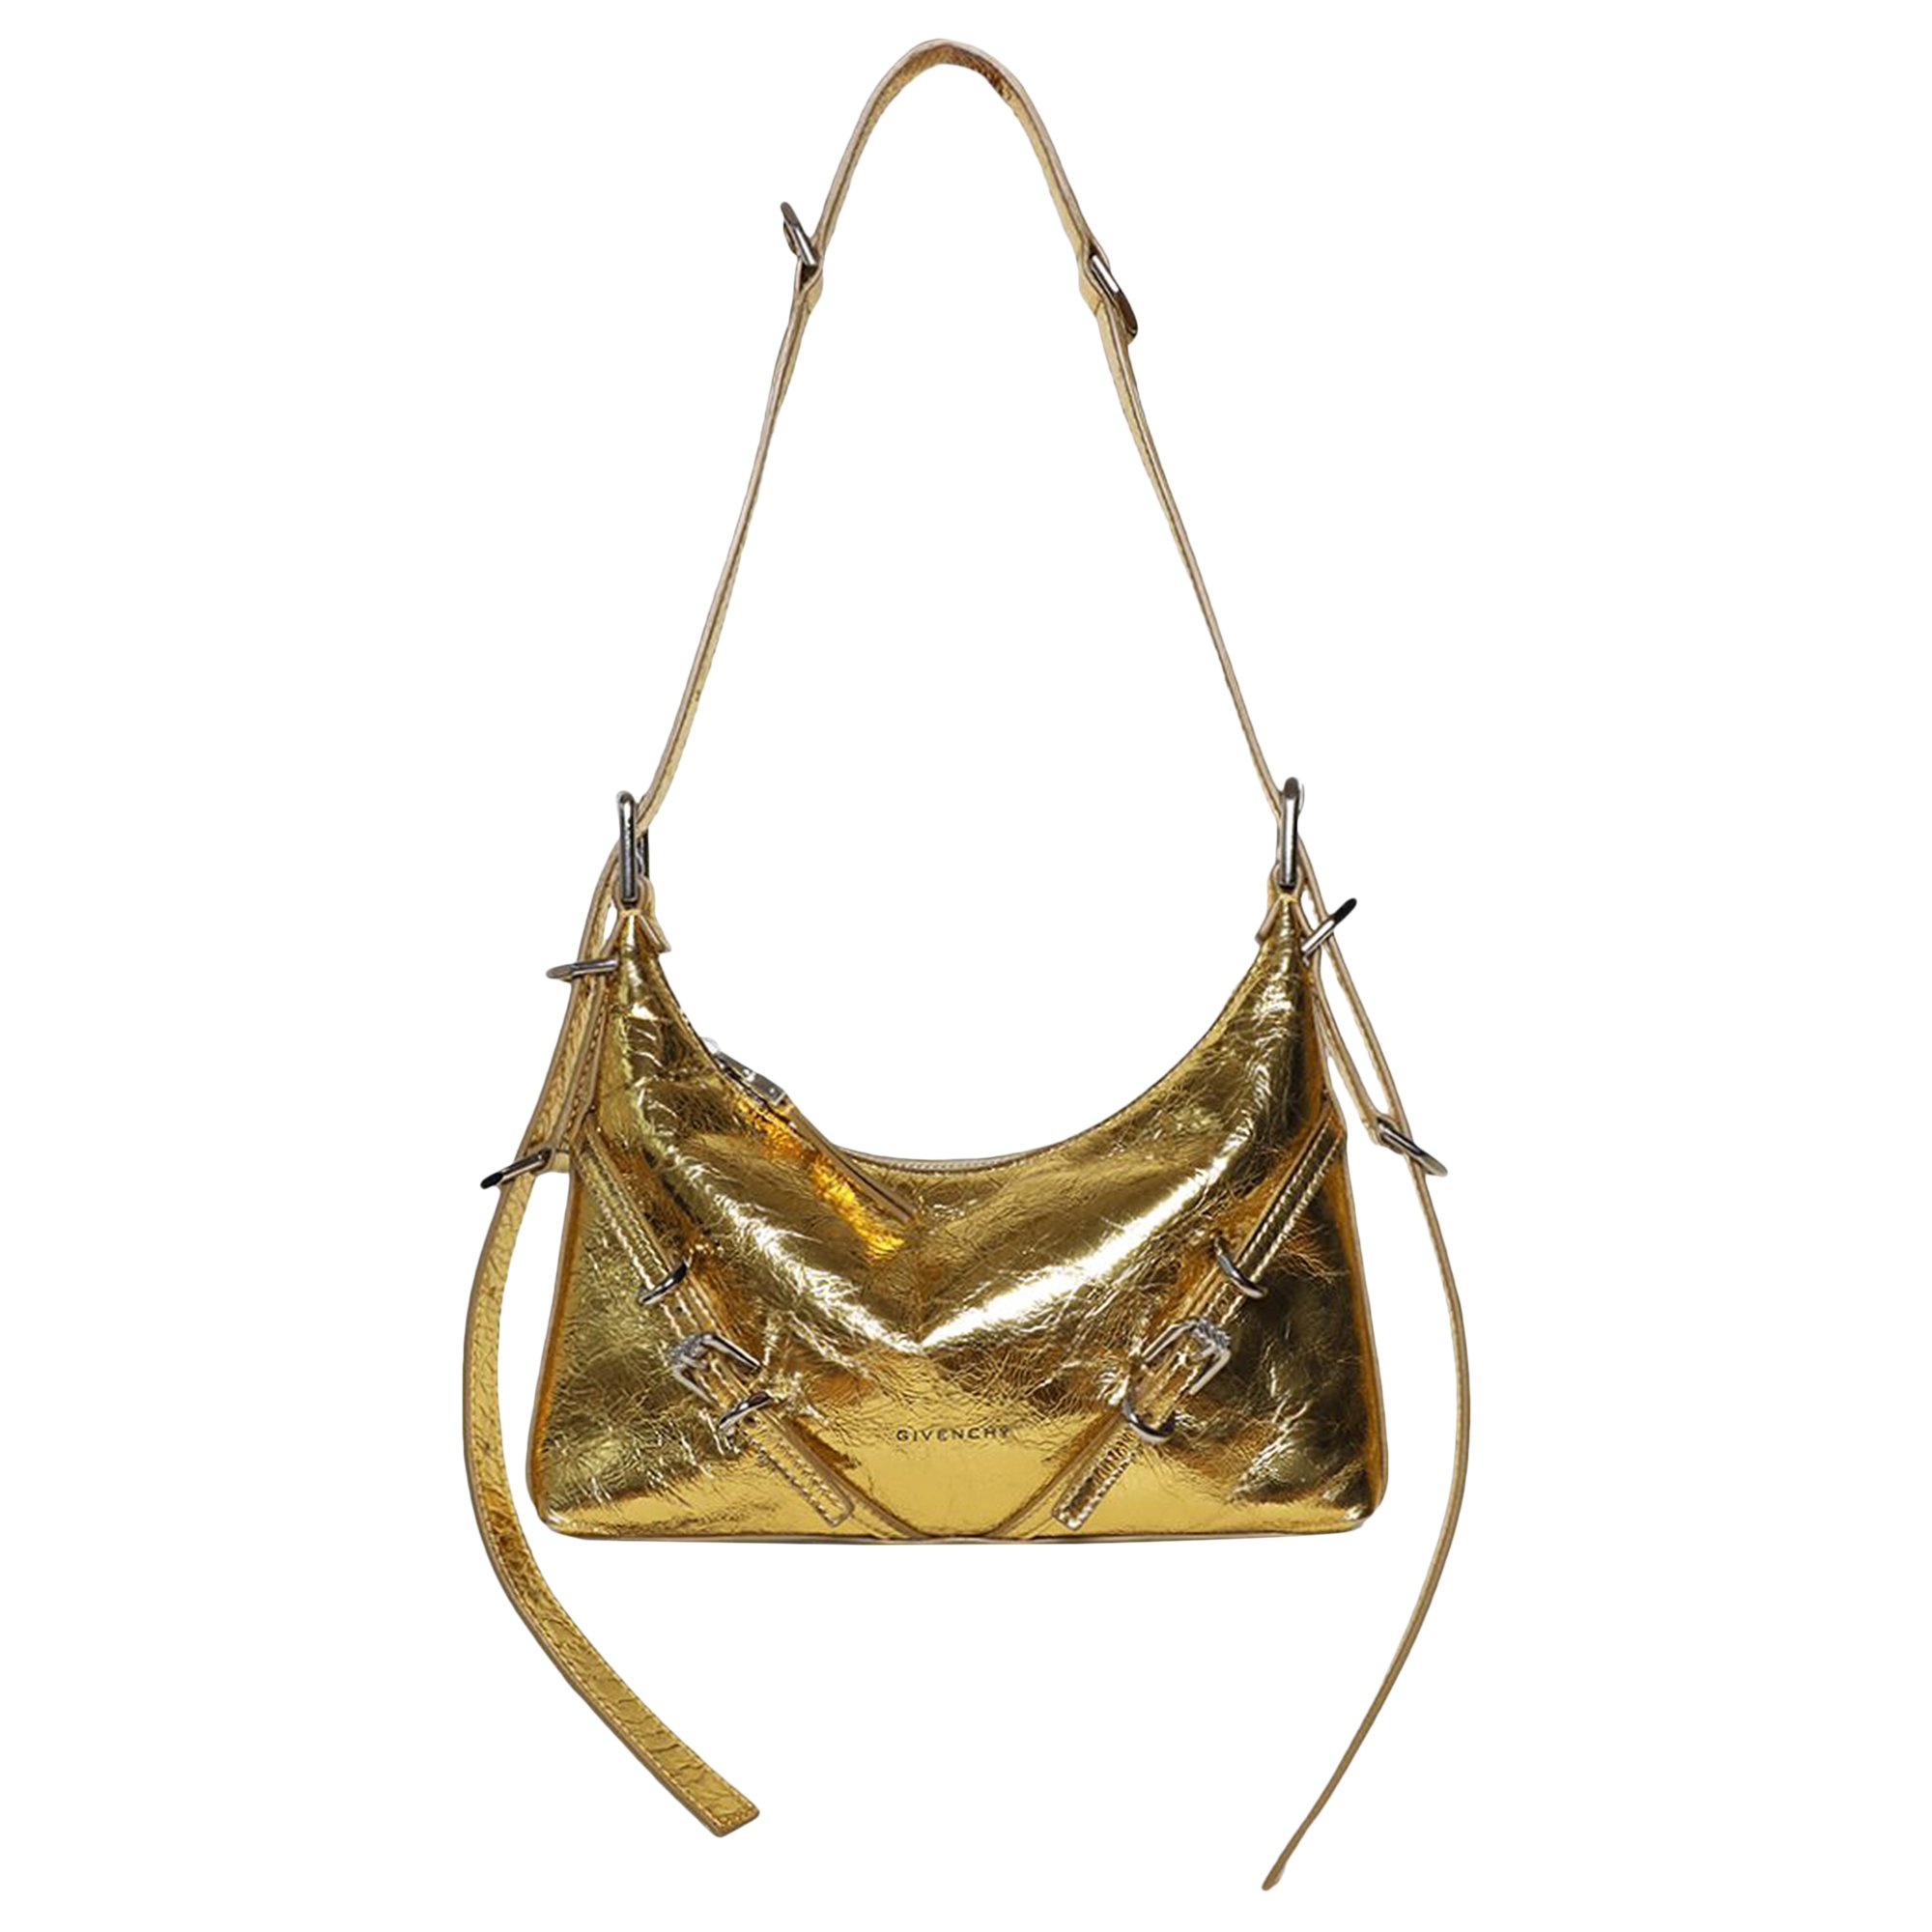 Миниатюрная кожаная сумка через плечо Givenchy Voyou, Золотая